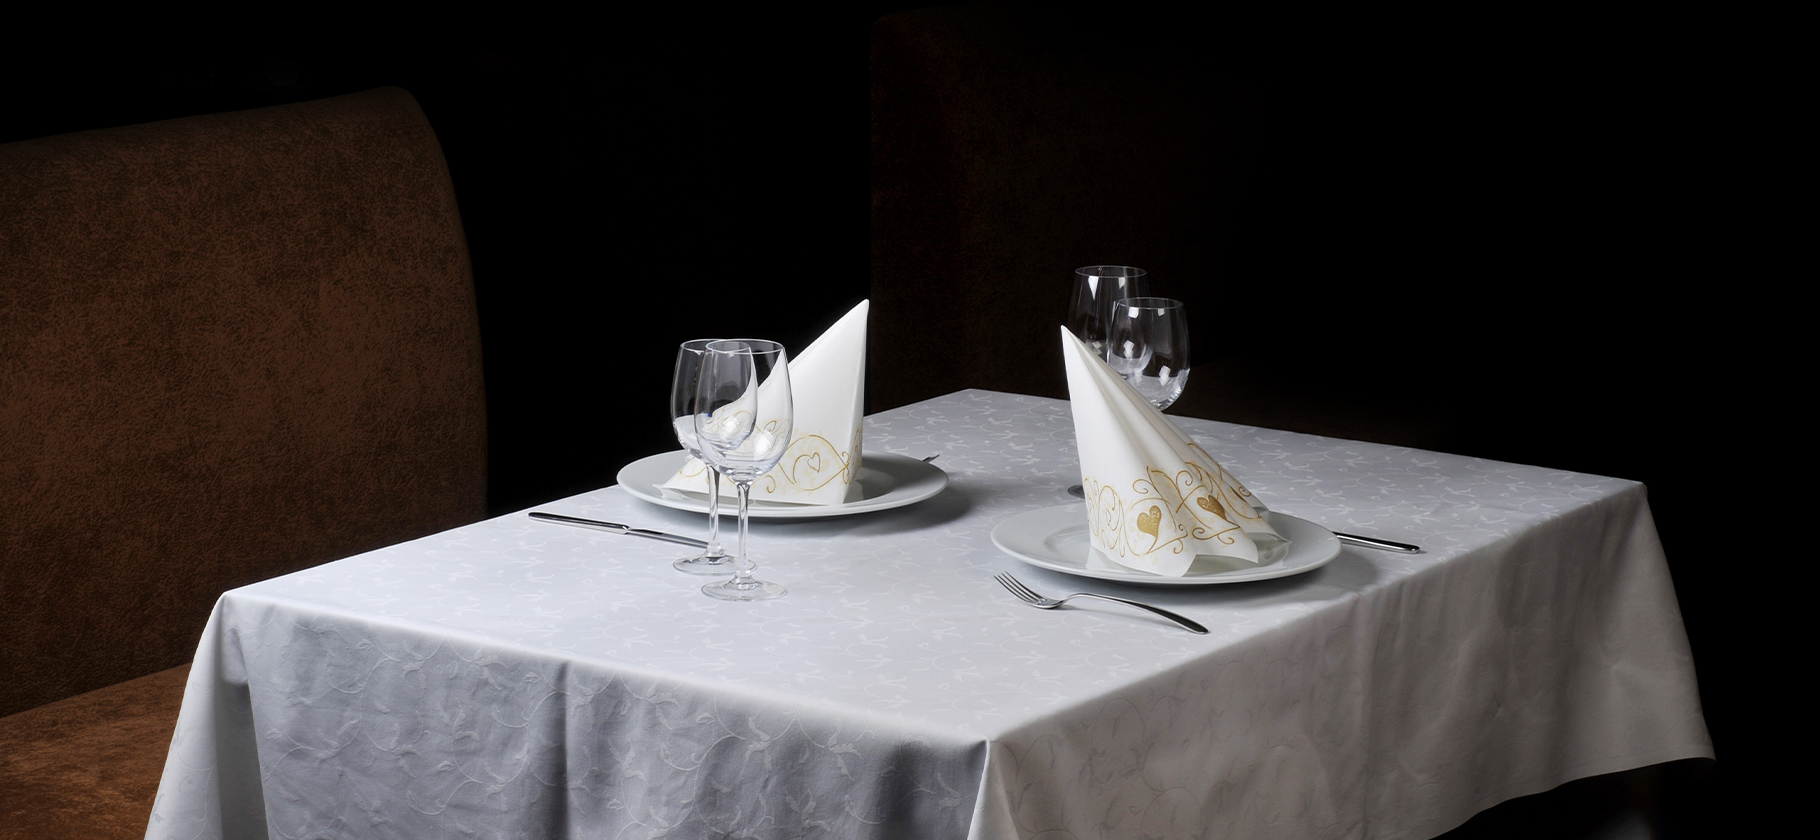 Развод: платное бронирование столика в ресторане